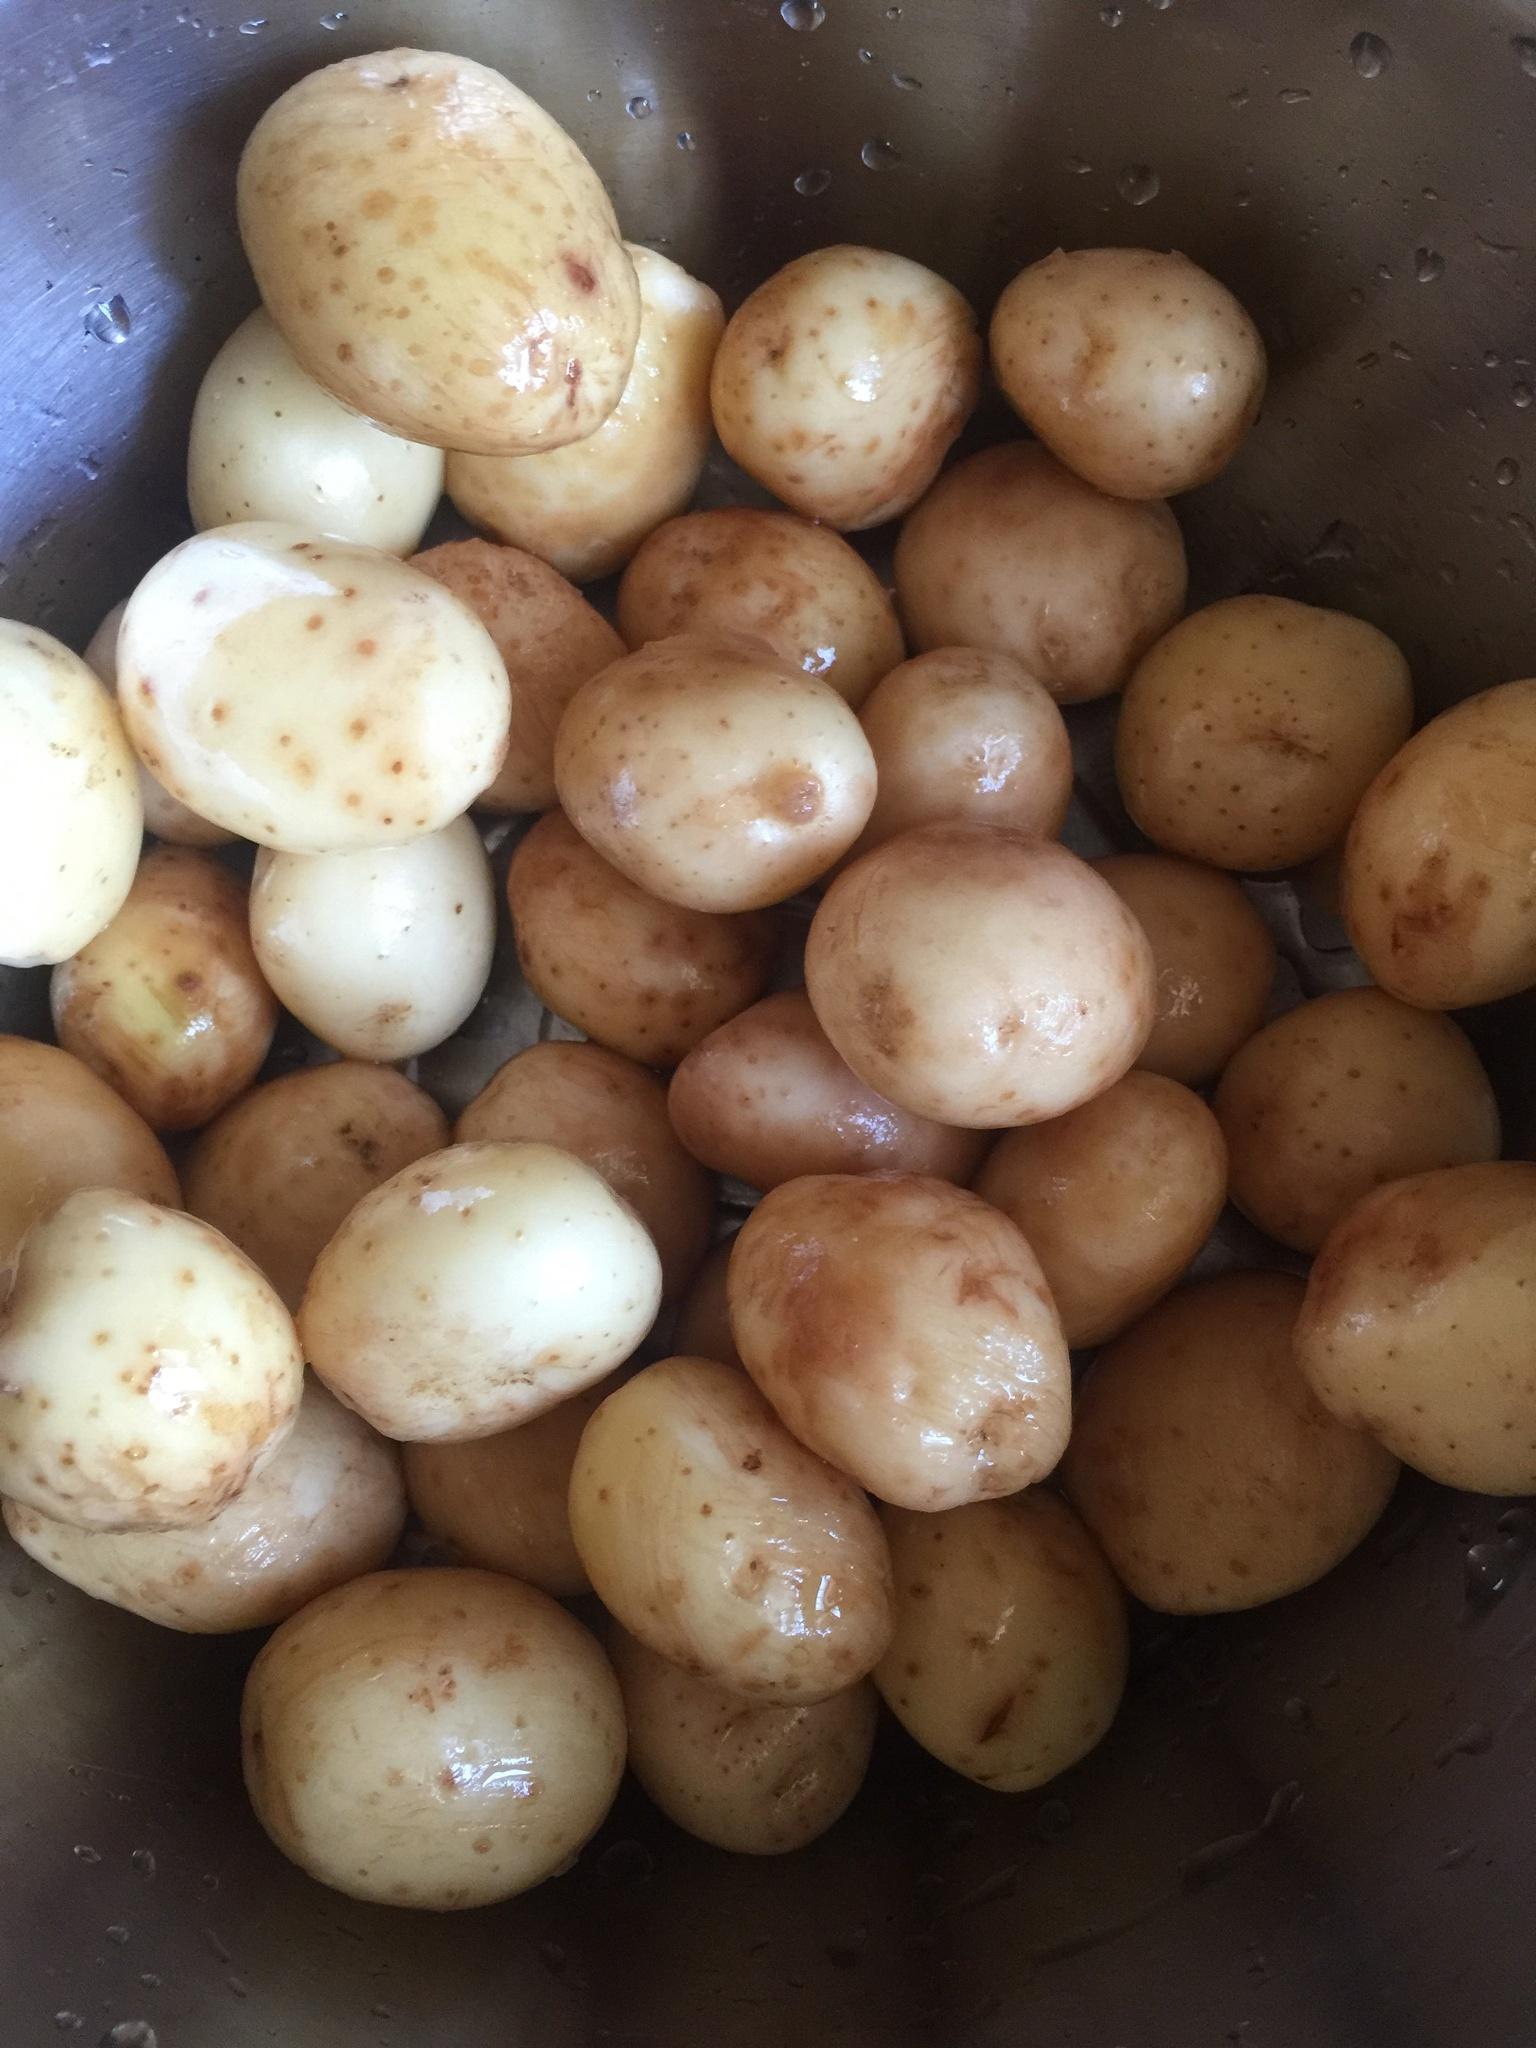 白底蔬菜土豆马铃薯两个土豆切开土豆图片免费下载 - 觅知网